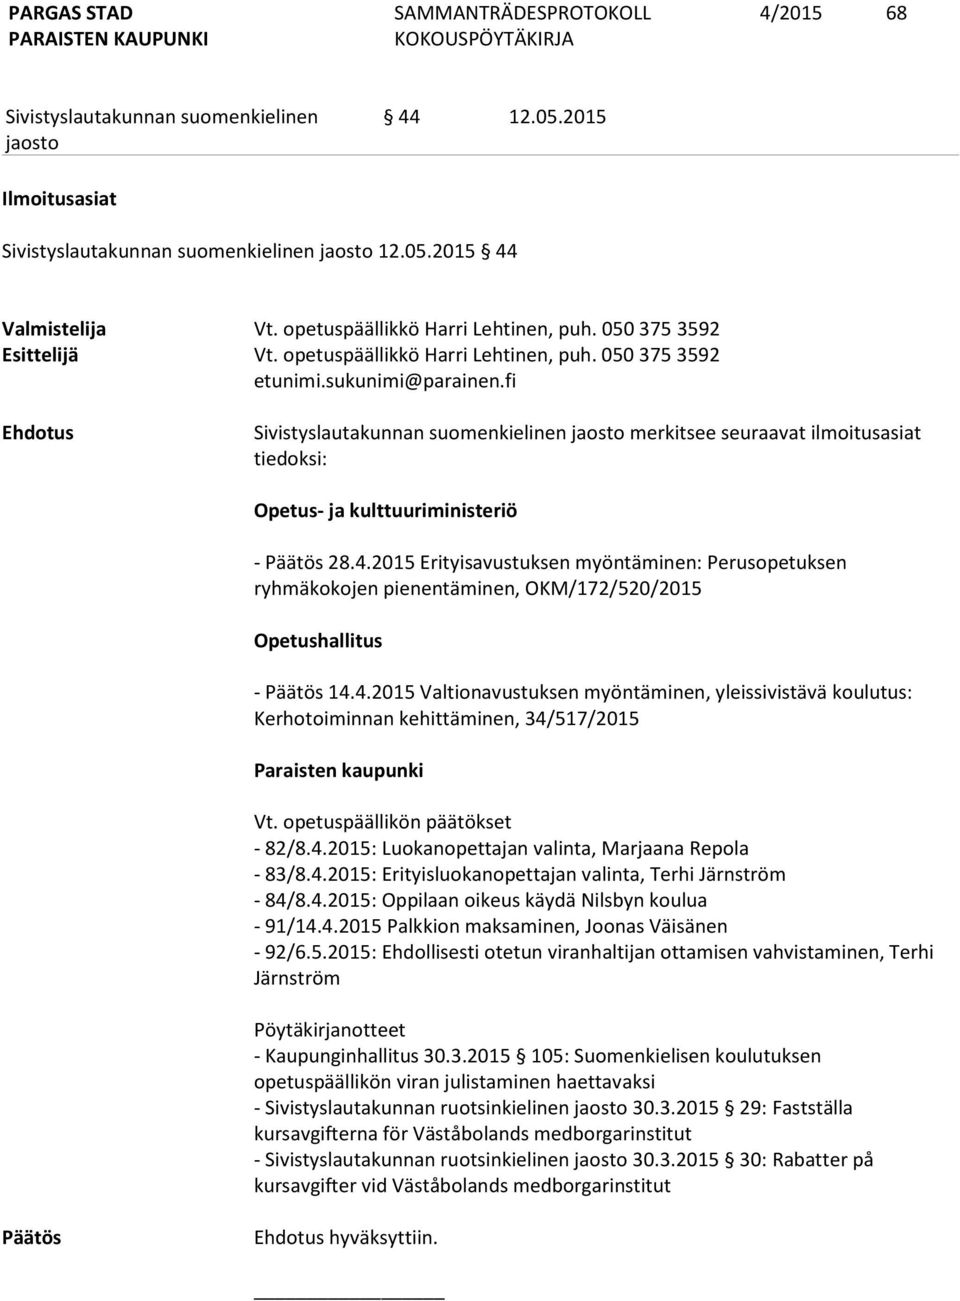 2015 Erityisavustuksen myöntäminen: Perusopetuksen ryhmäkokojen pienentäminen, OKM/172/520/2015 Opetushallitus - 14.